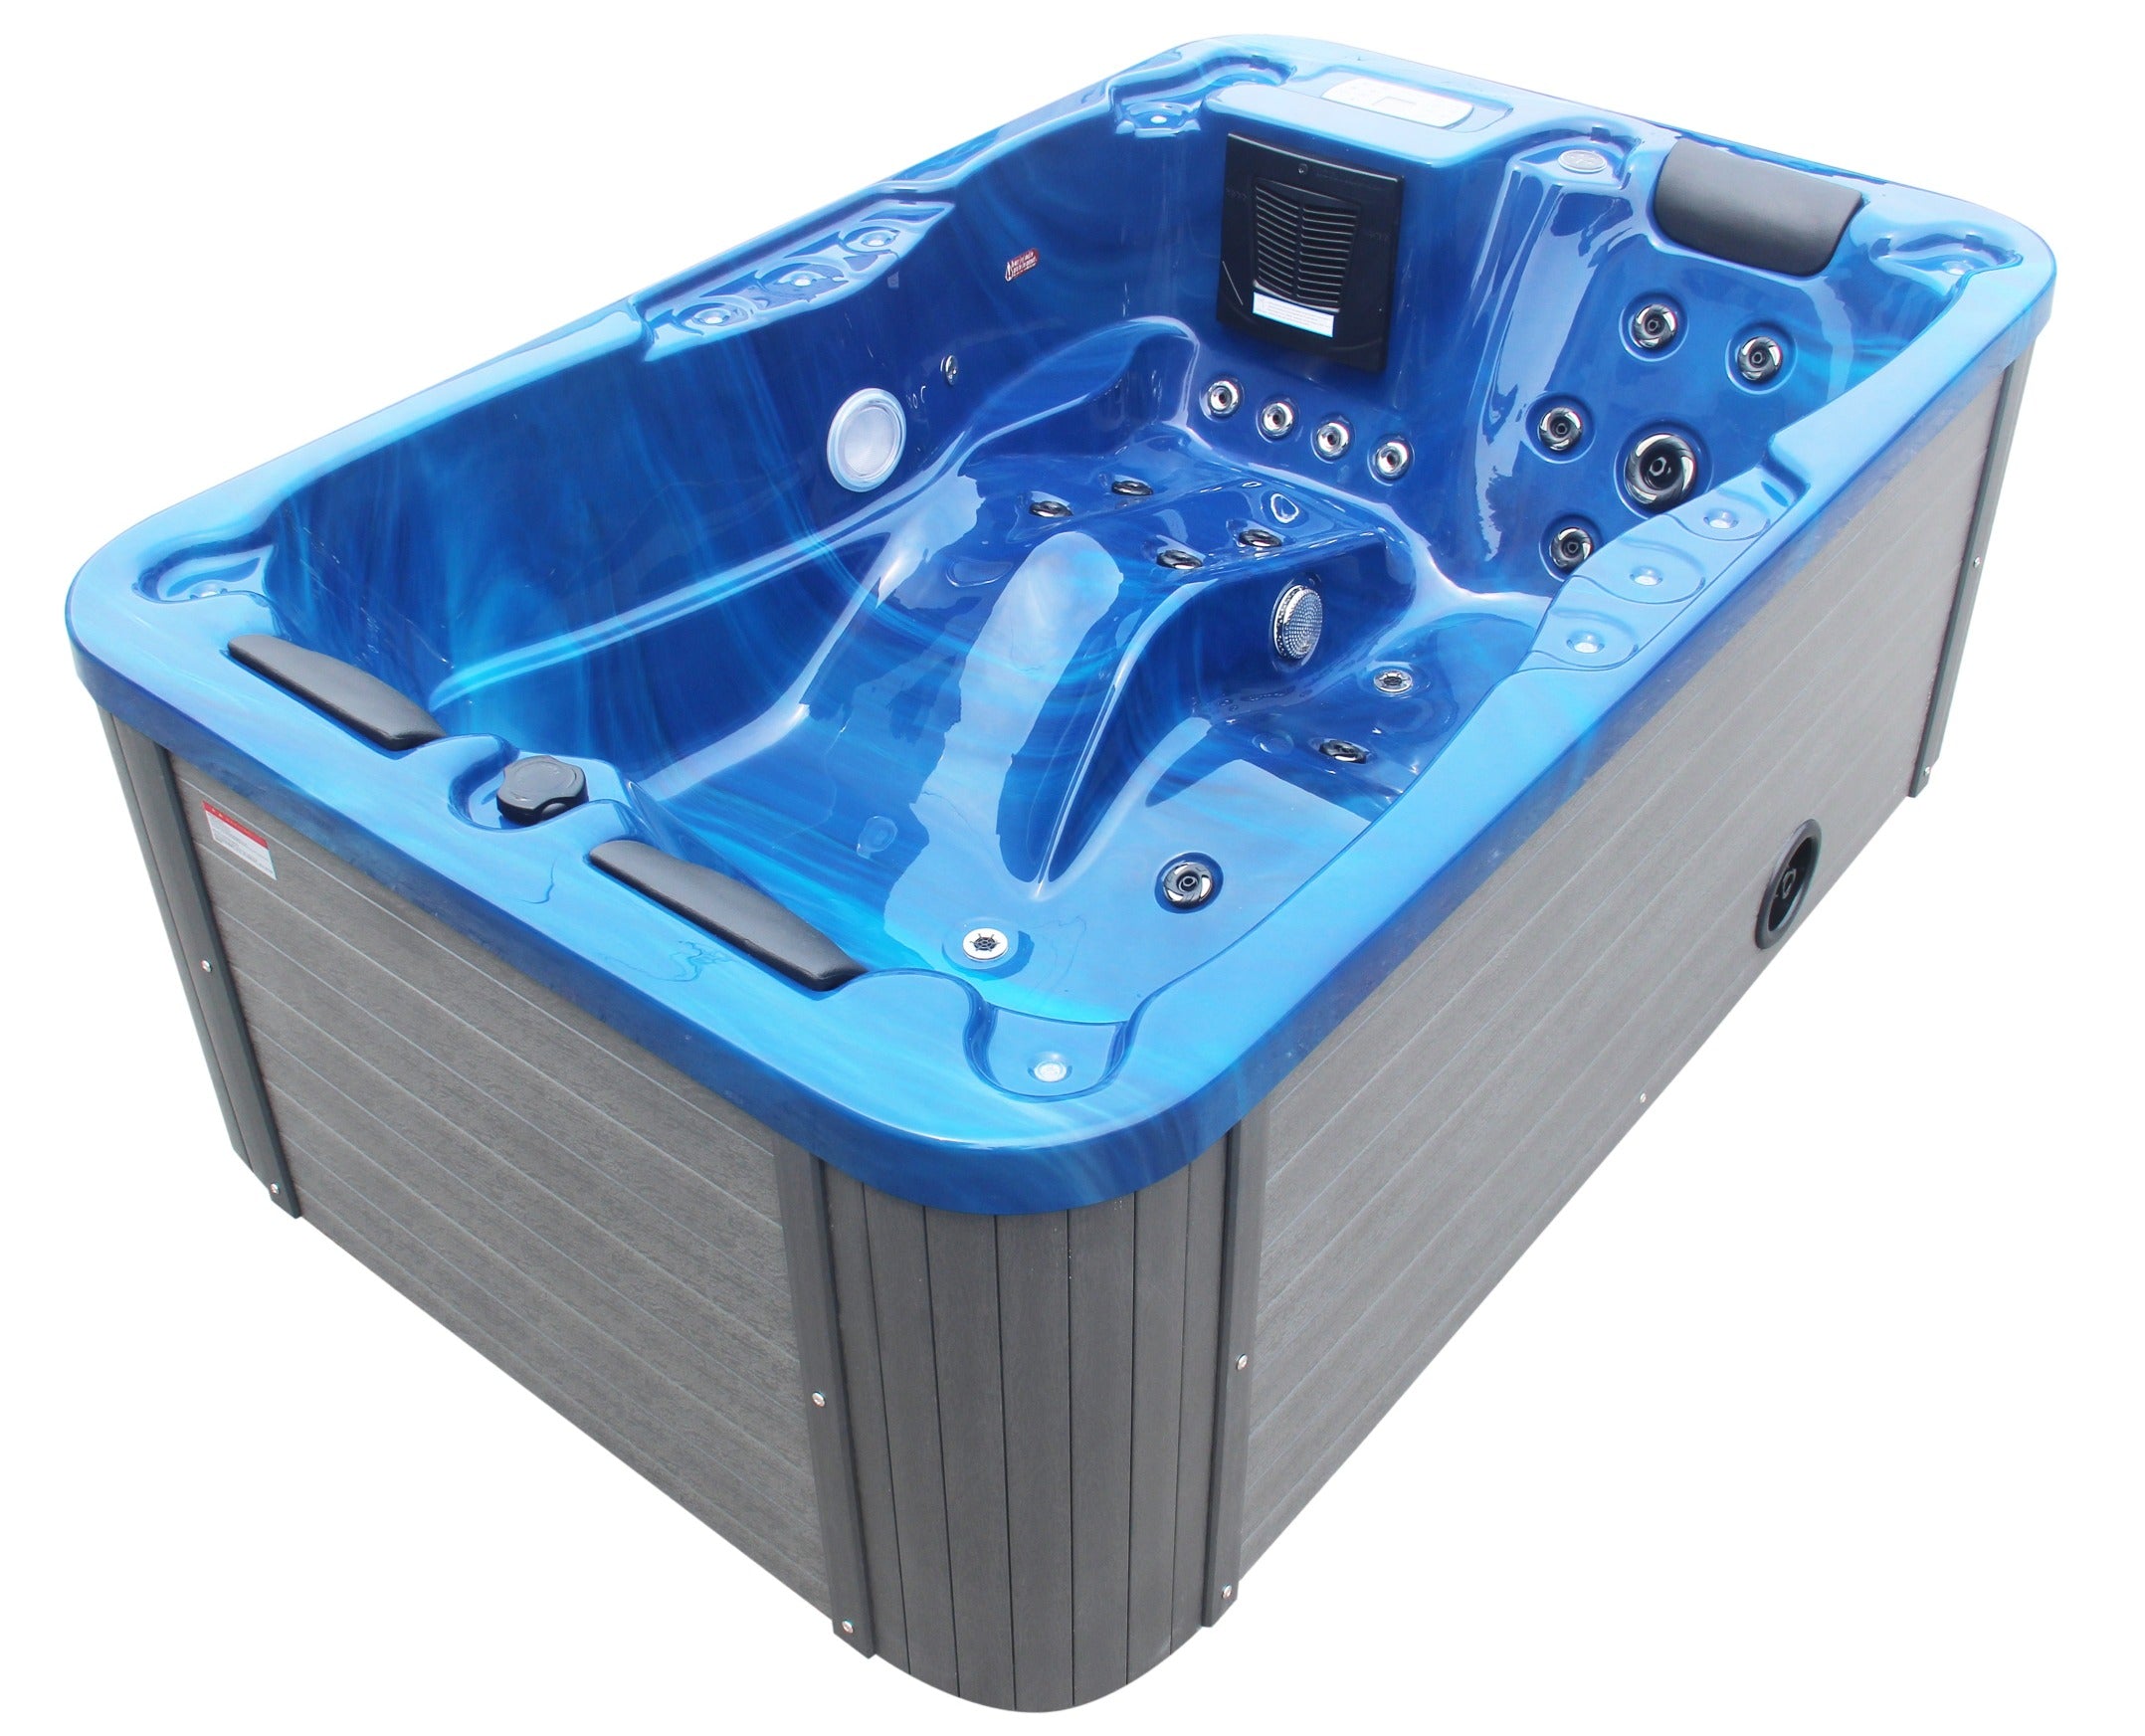 Sanotechnik Whirlpool MODENA - Blau - 35 Massagedüsen für 3 Personen mit Radio, Lautsprecher, Bluetooth und LED Beleuchtung